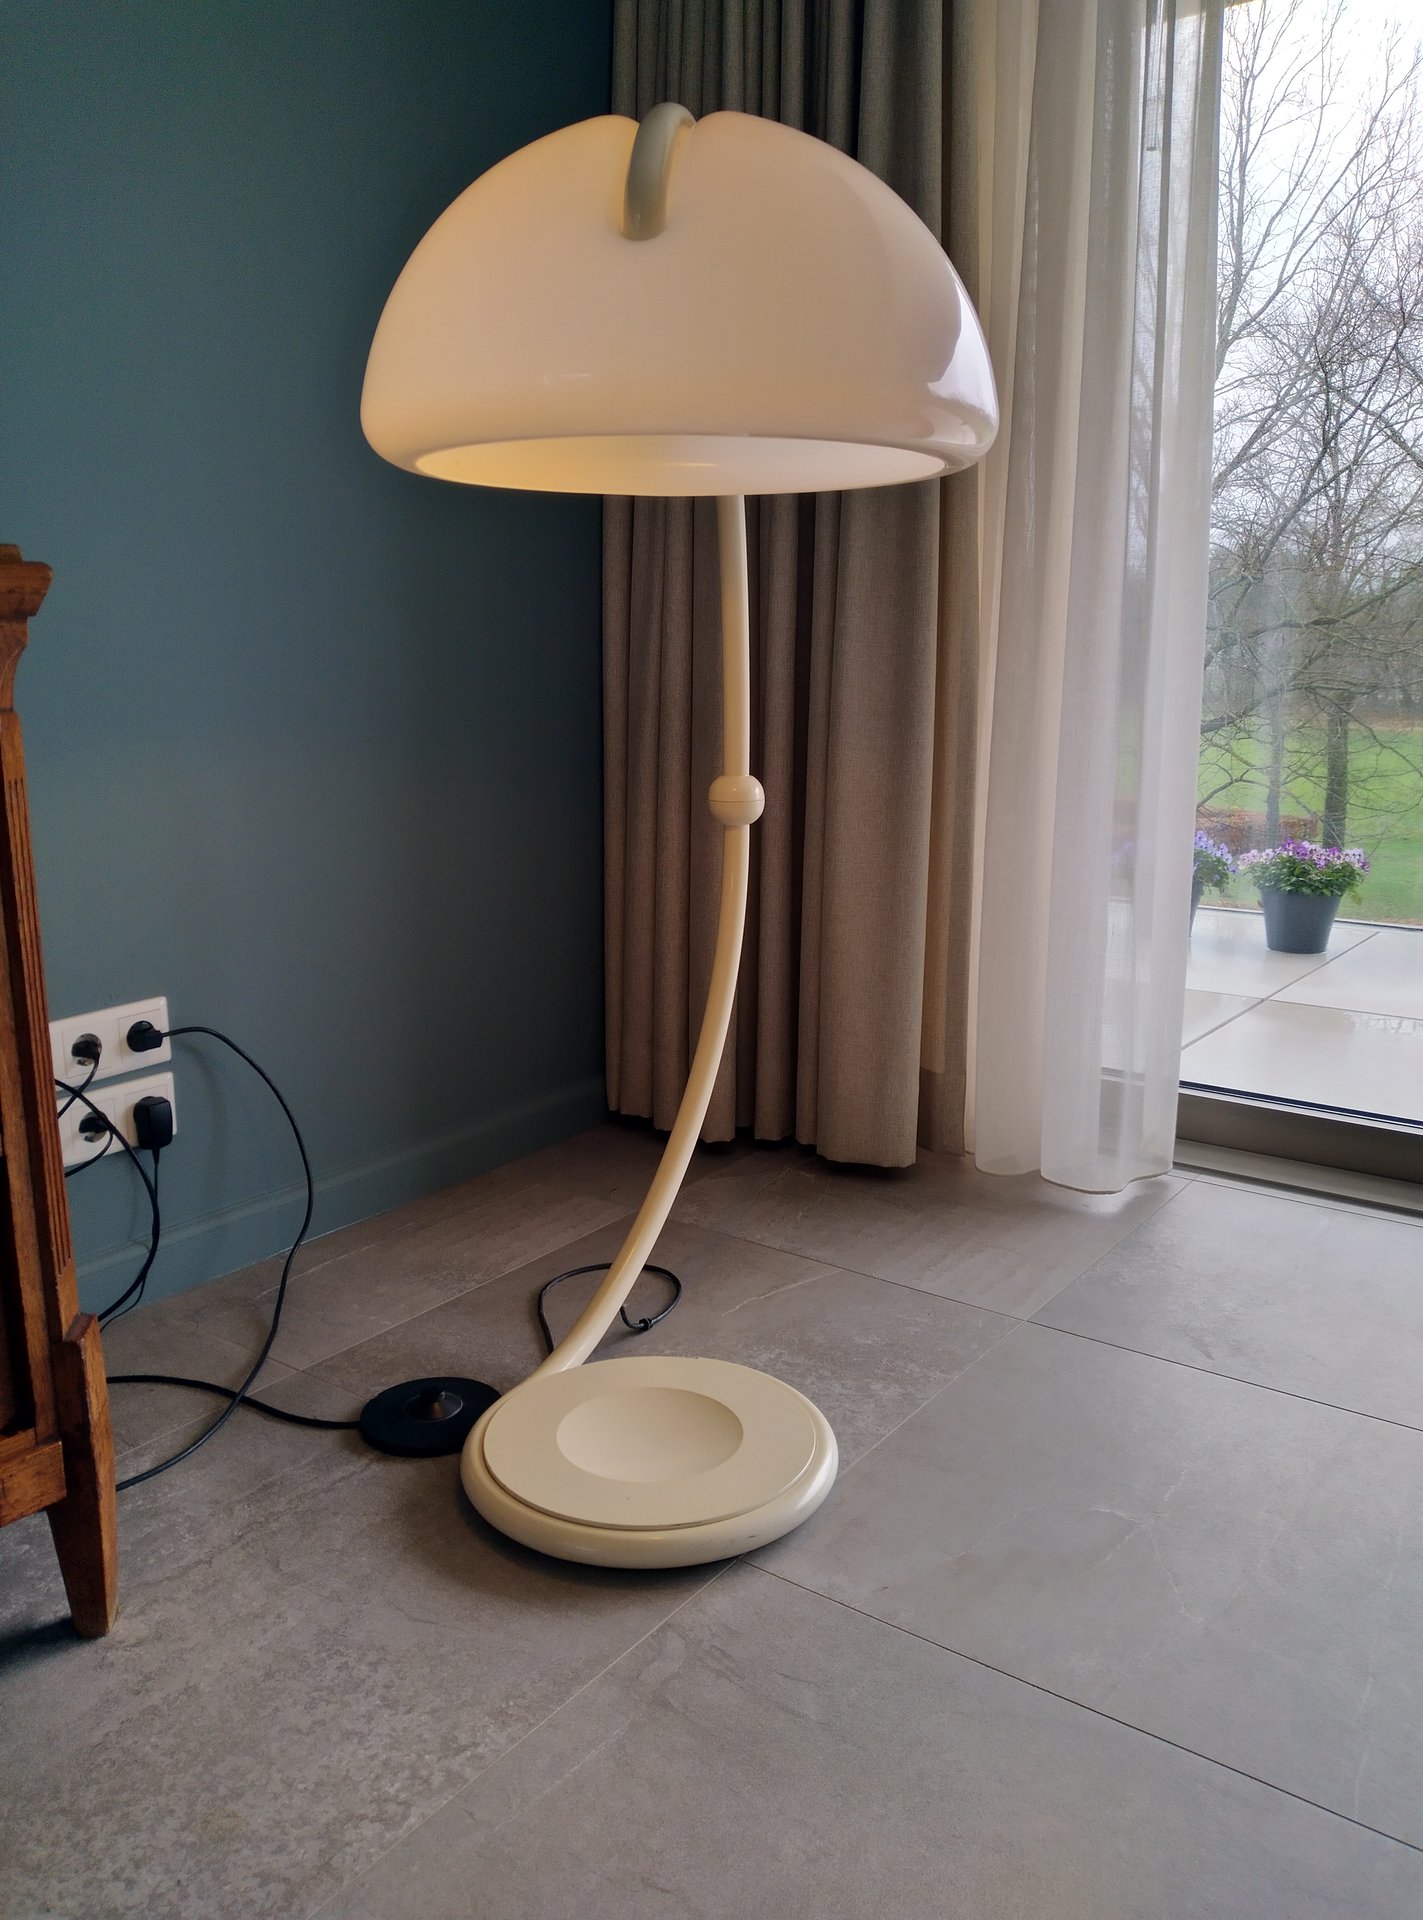 sterk foto diagonaal Italiaanse staande lamp | € 125 | Whoppah